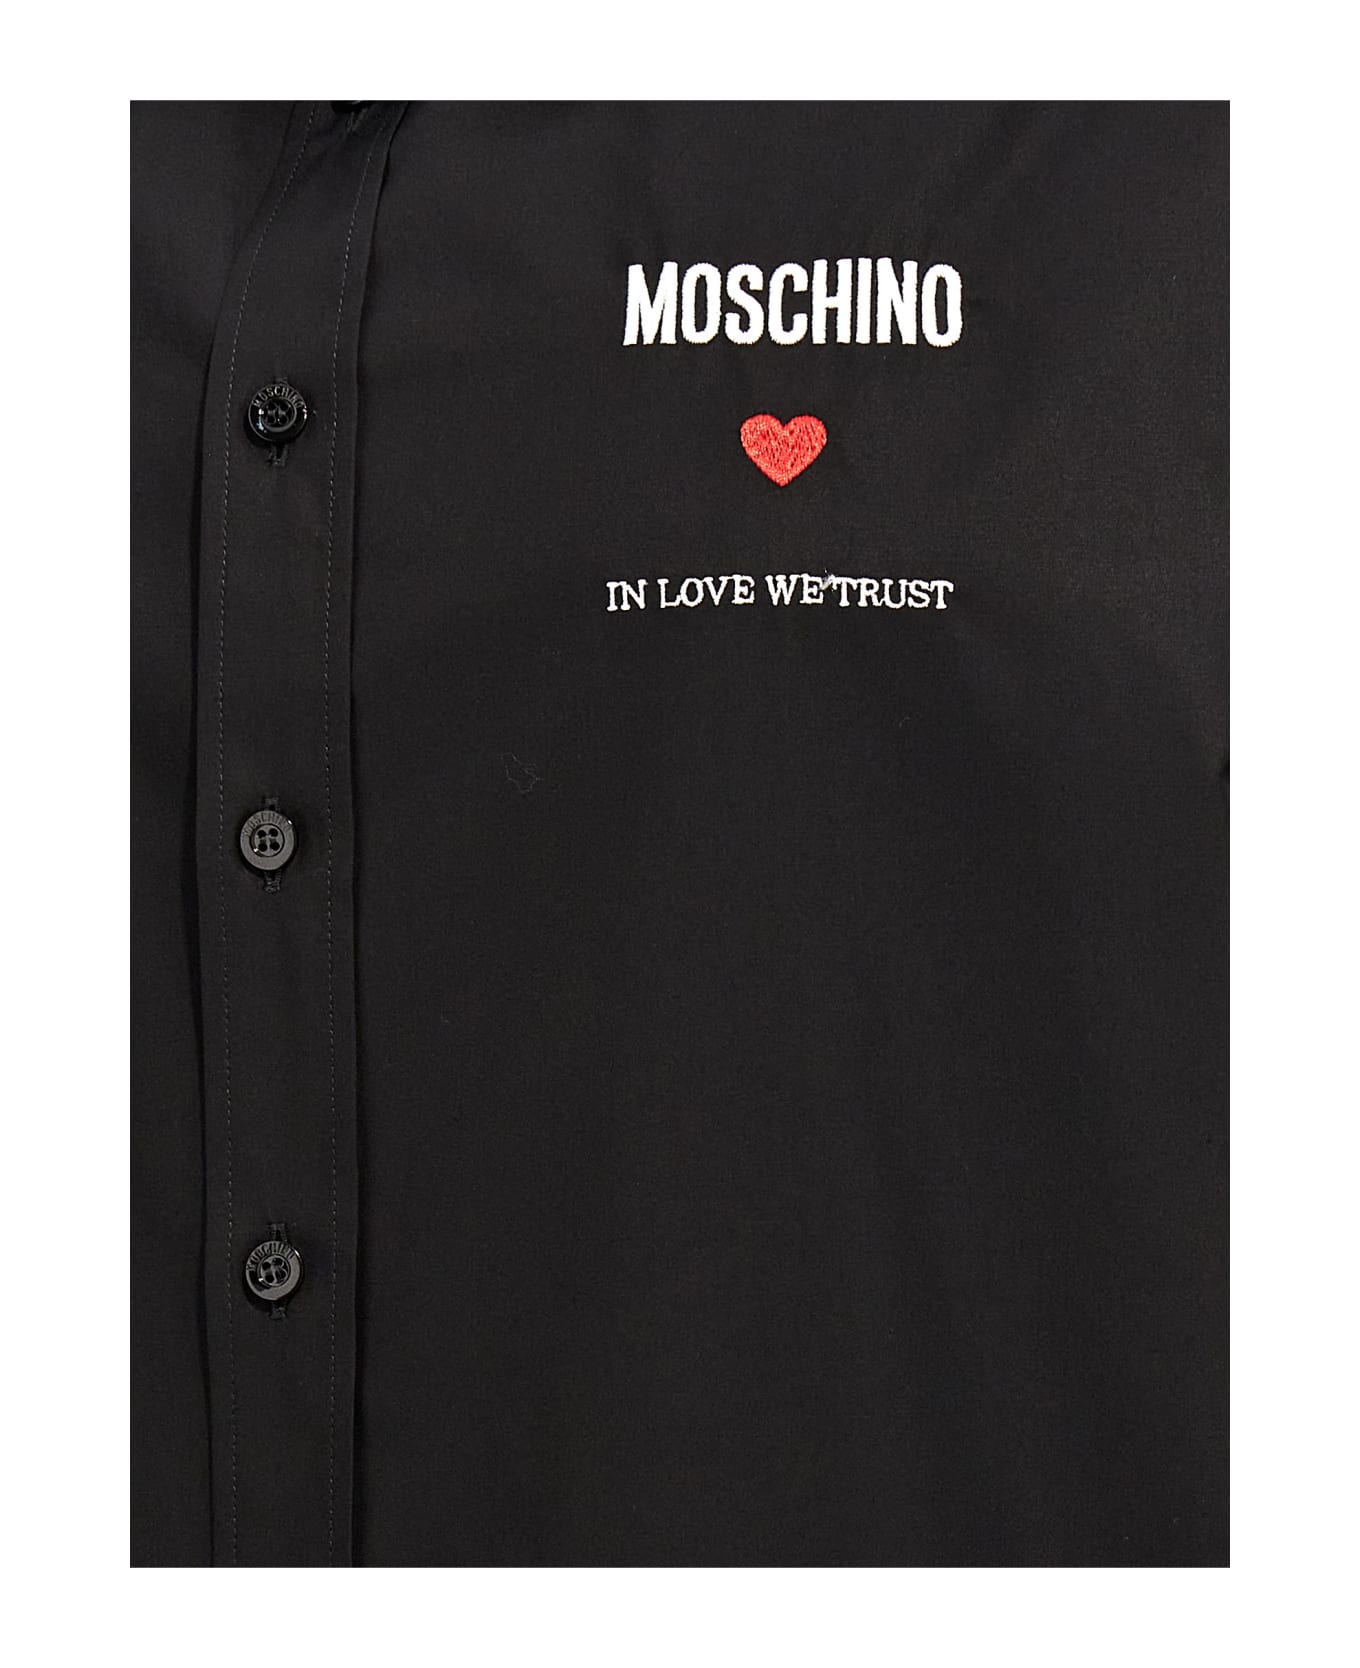 Moschino 'in Love We Trust' Shirt - Black  